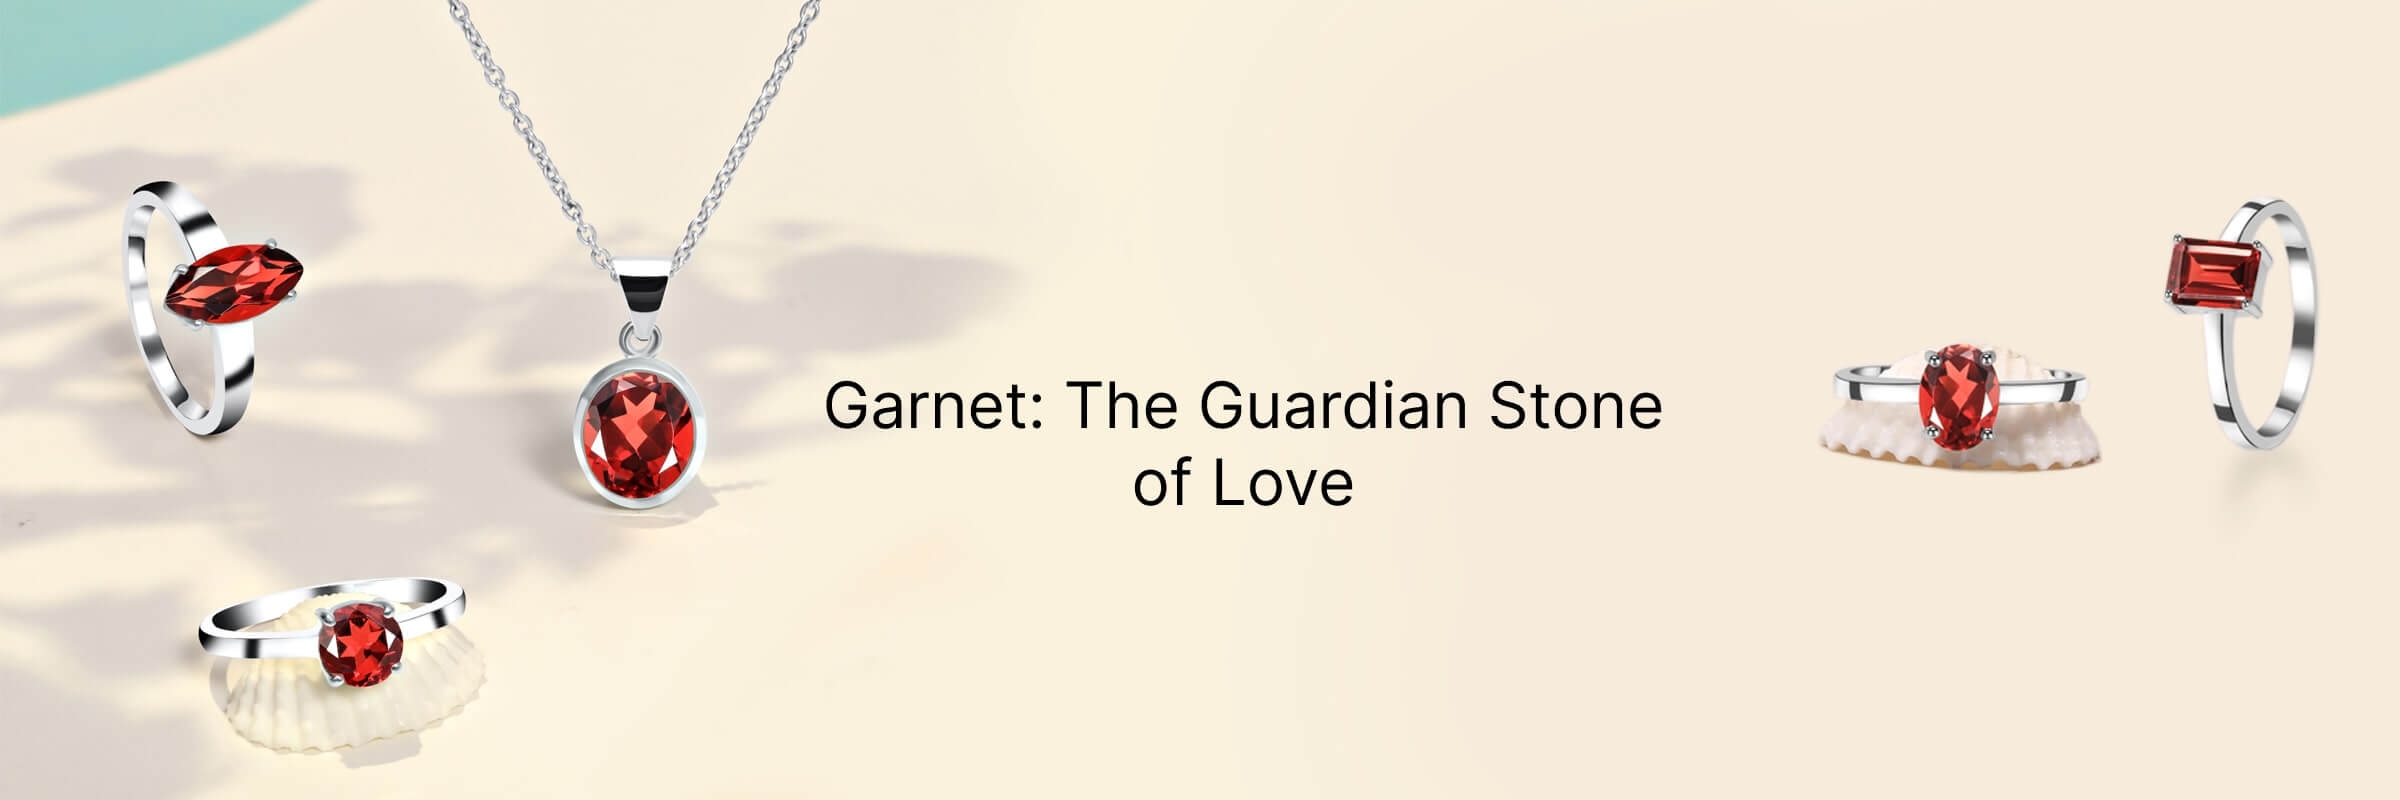 Symbolism of Garnet